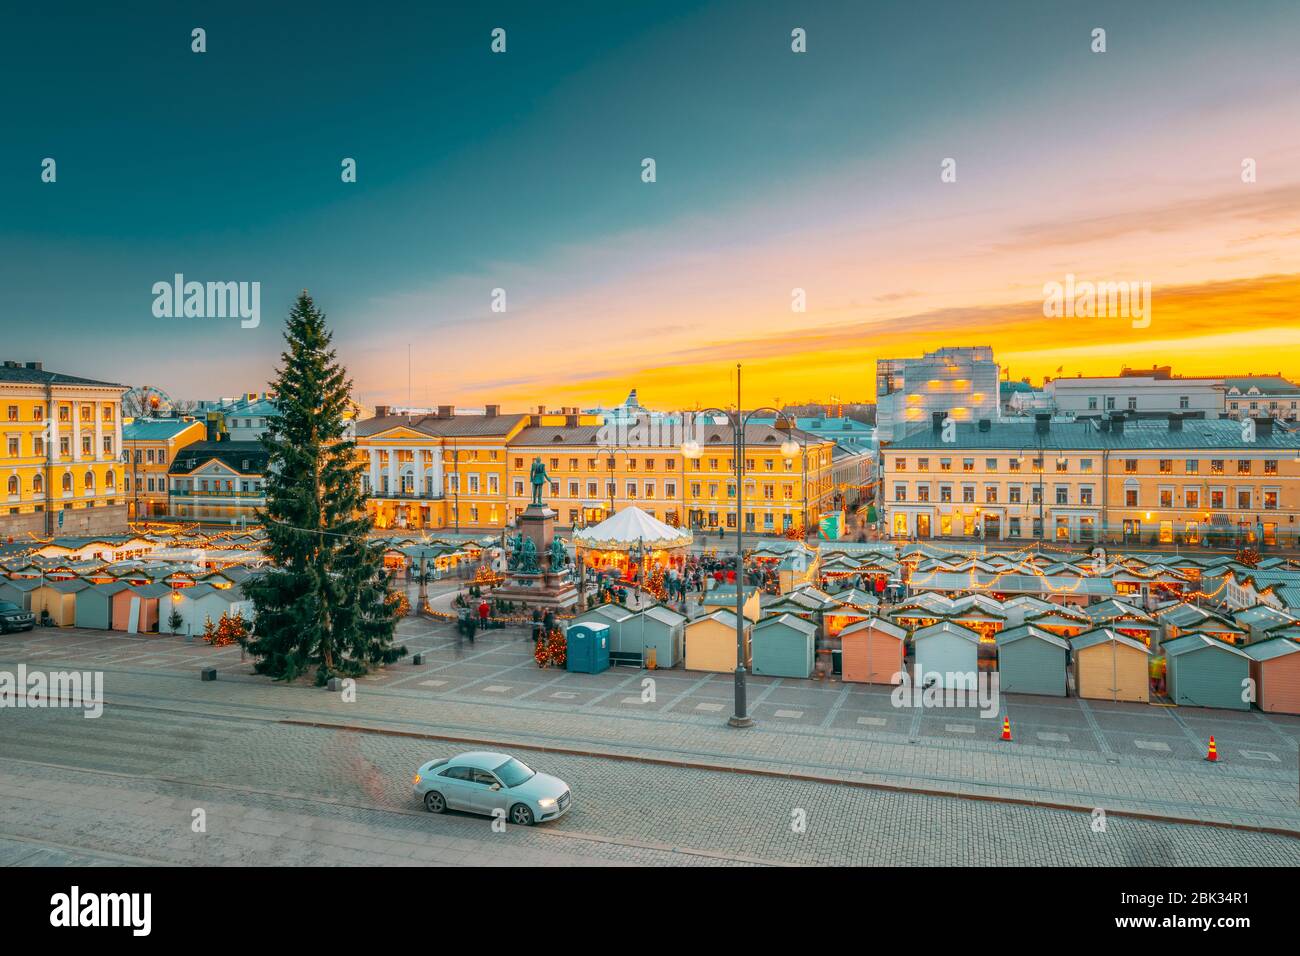 Helsinki, Finlandia - 10 de diciembre de 2016: Mercado de Navidad con árbol de Navidad en la Plaza del Senado en Sunset Sunrise. Foto de stock